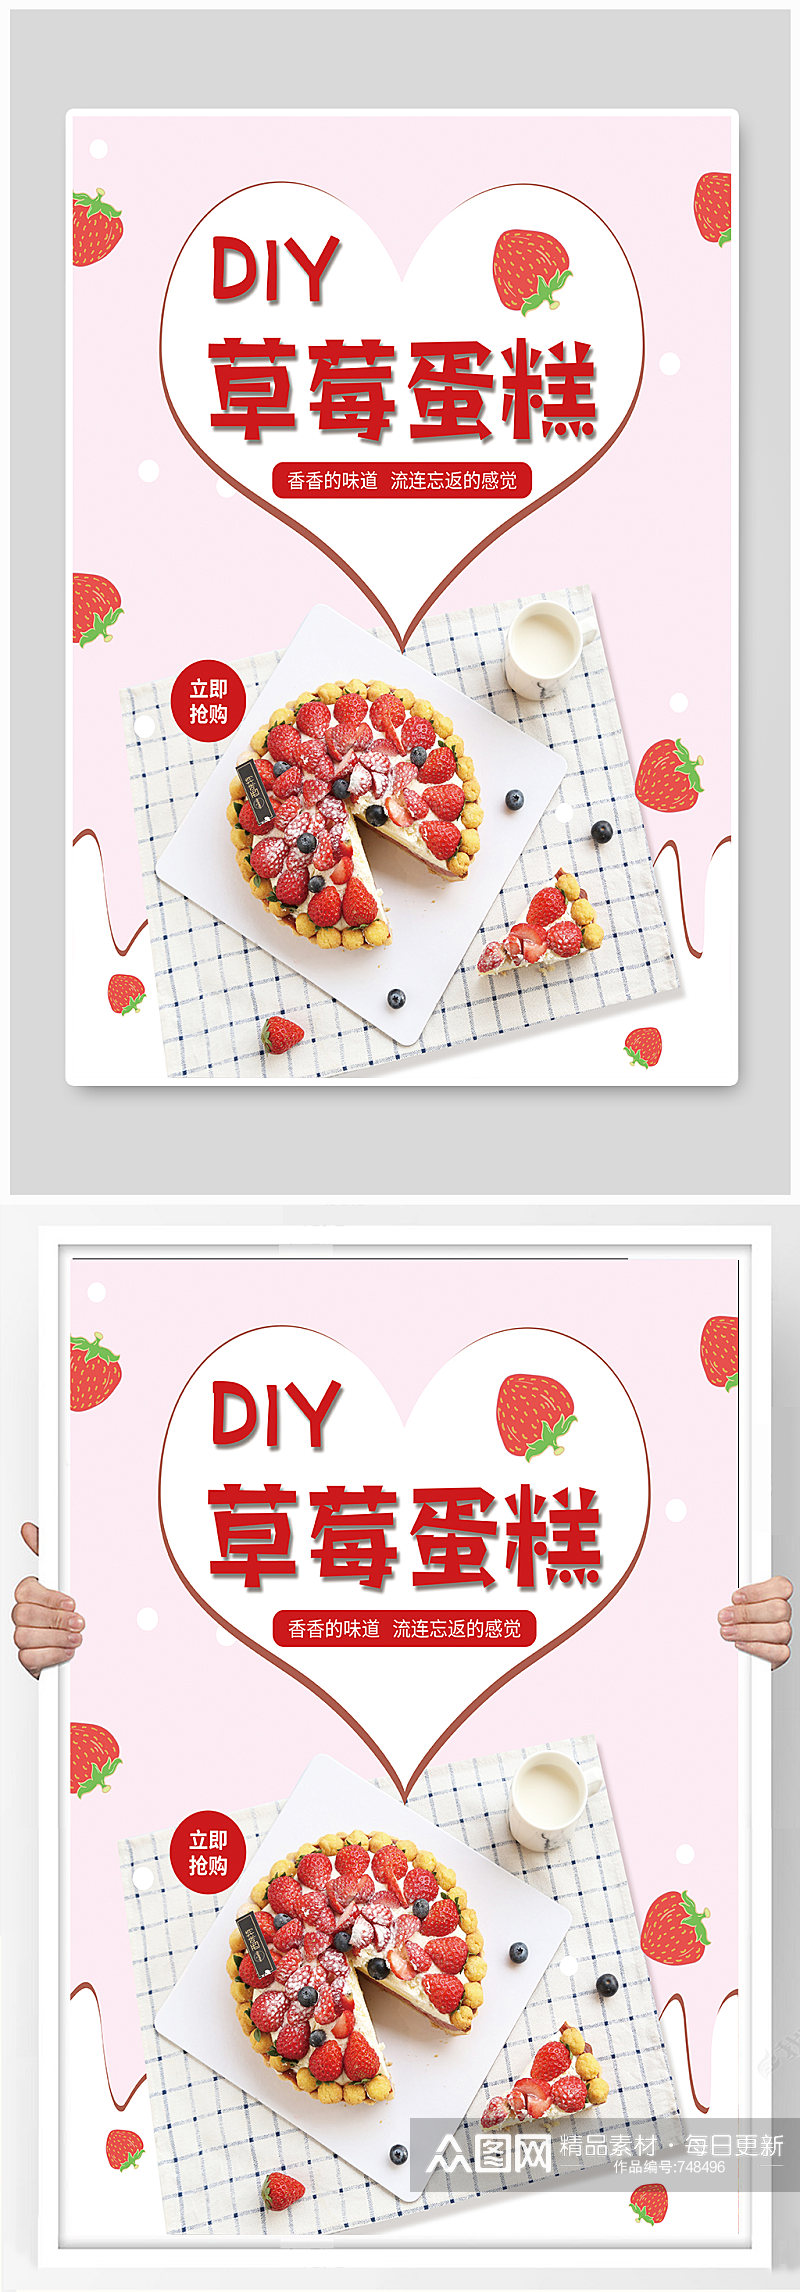 清新粉色草莓蛋糕海报素材